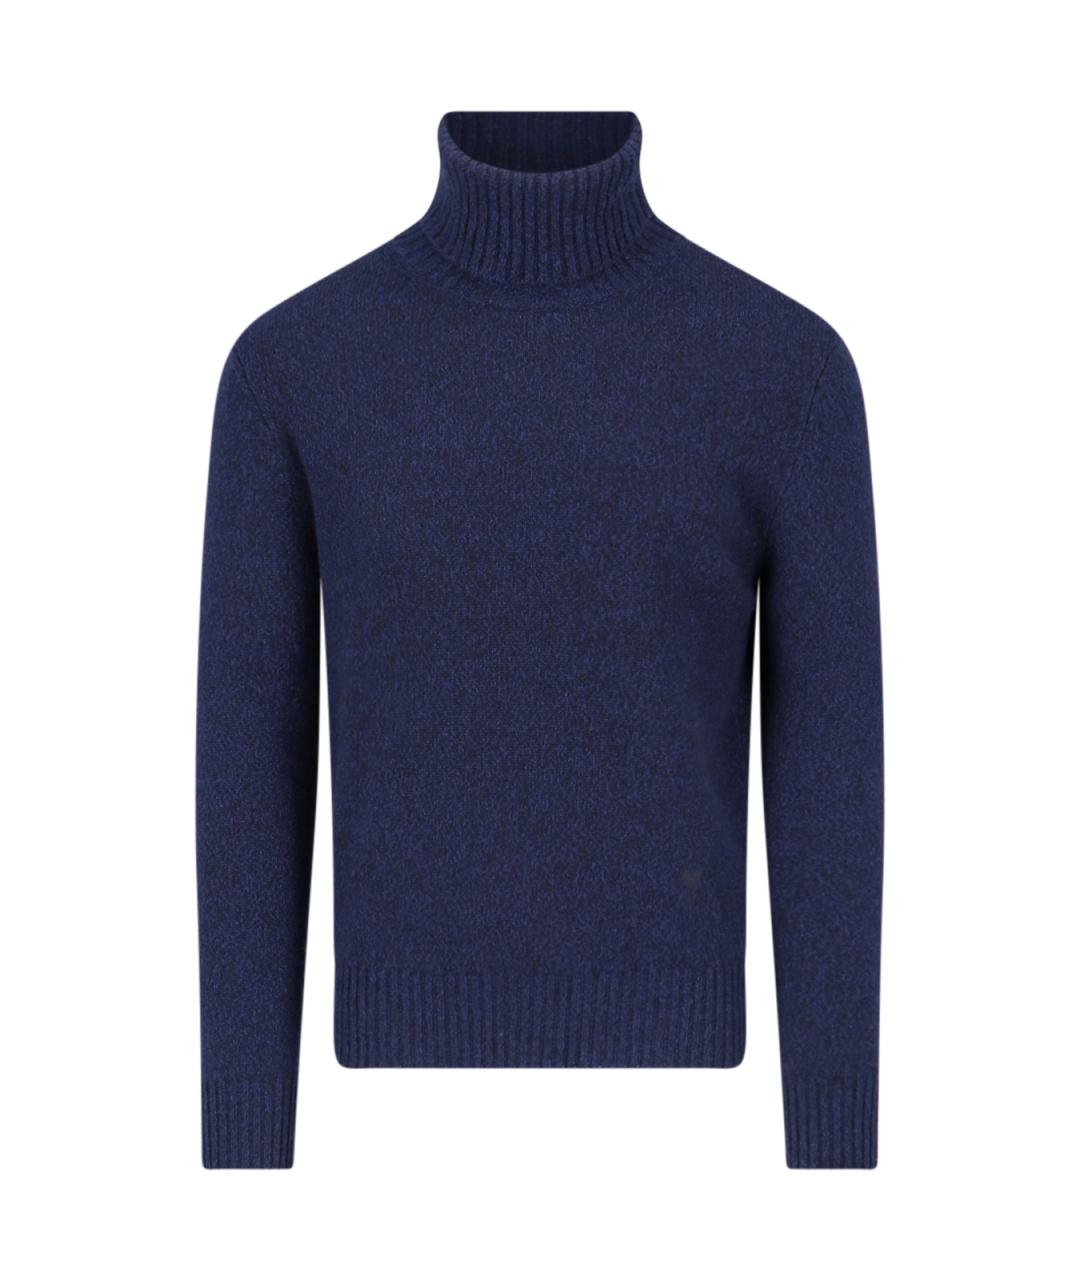 AMI Синий кашемировый джемпер / свитер, фото 1